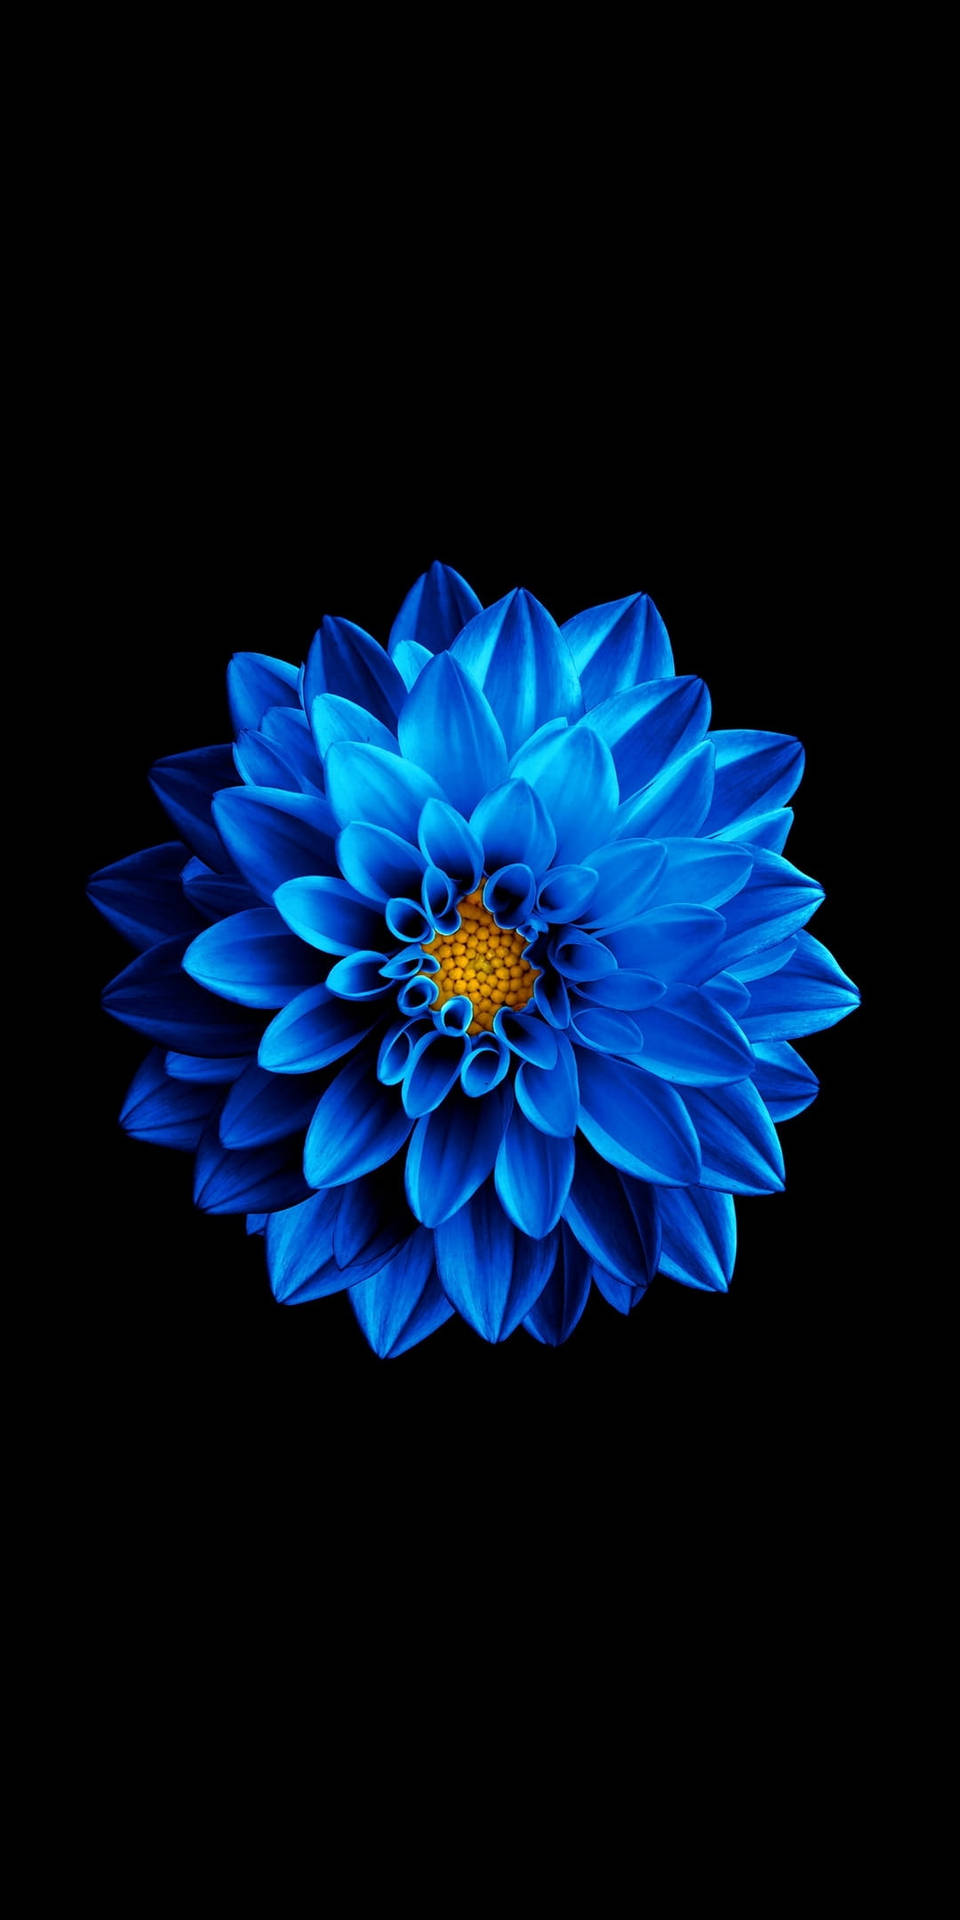 Teléfonooled Con Flor Azul Luminosa. Fondo de pantalla